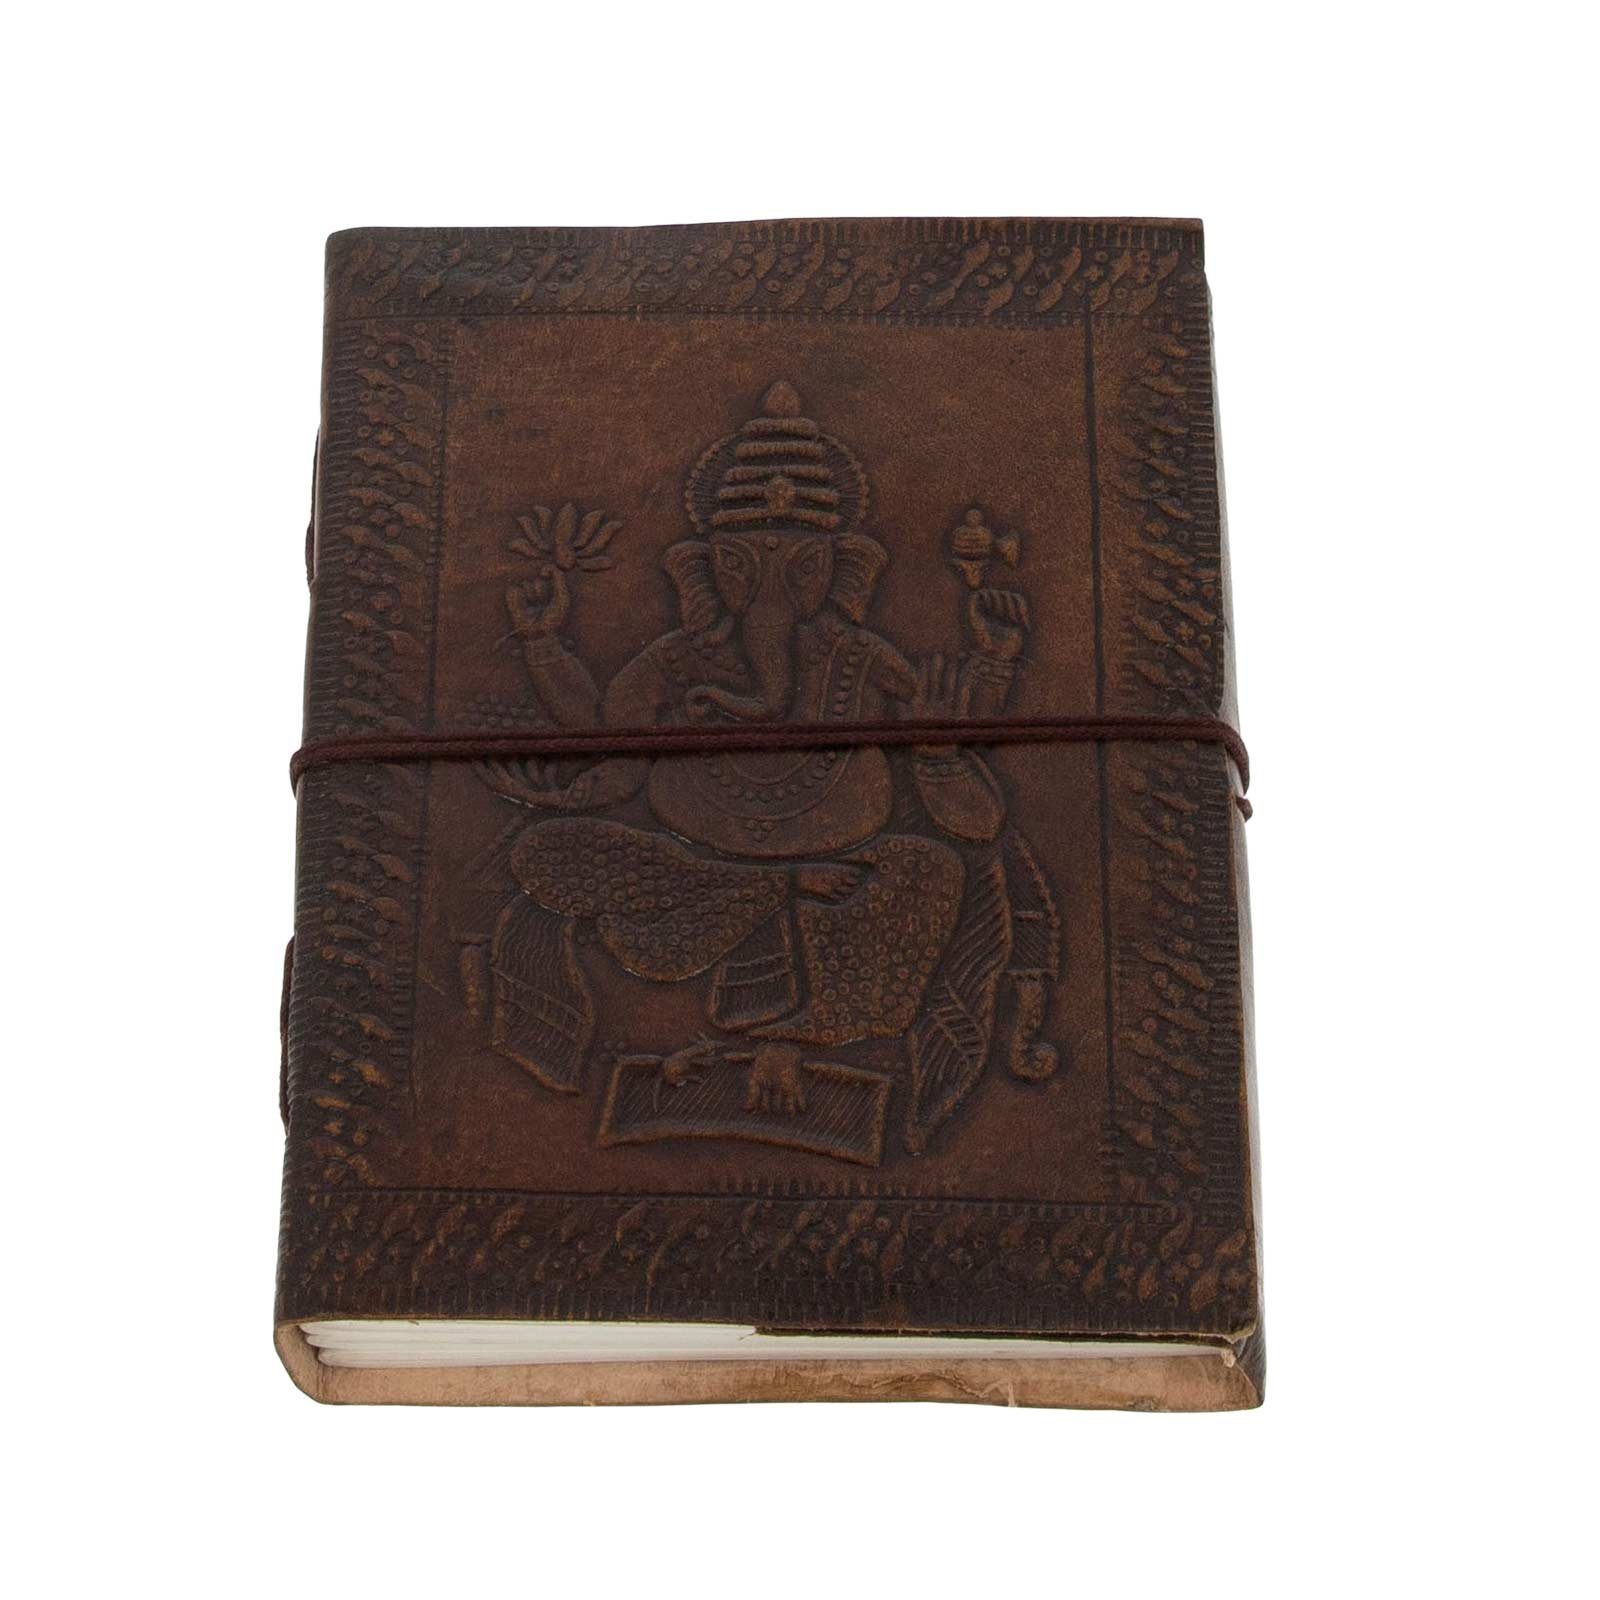 Tagebuch UND 18x13cm MAGIE Notizbuch Leder KUNST Tagebuch handgefertigt-geprägtes Ganesha Lord